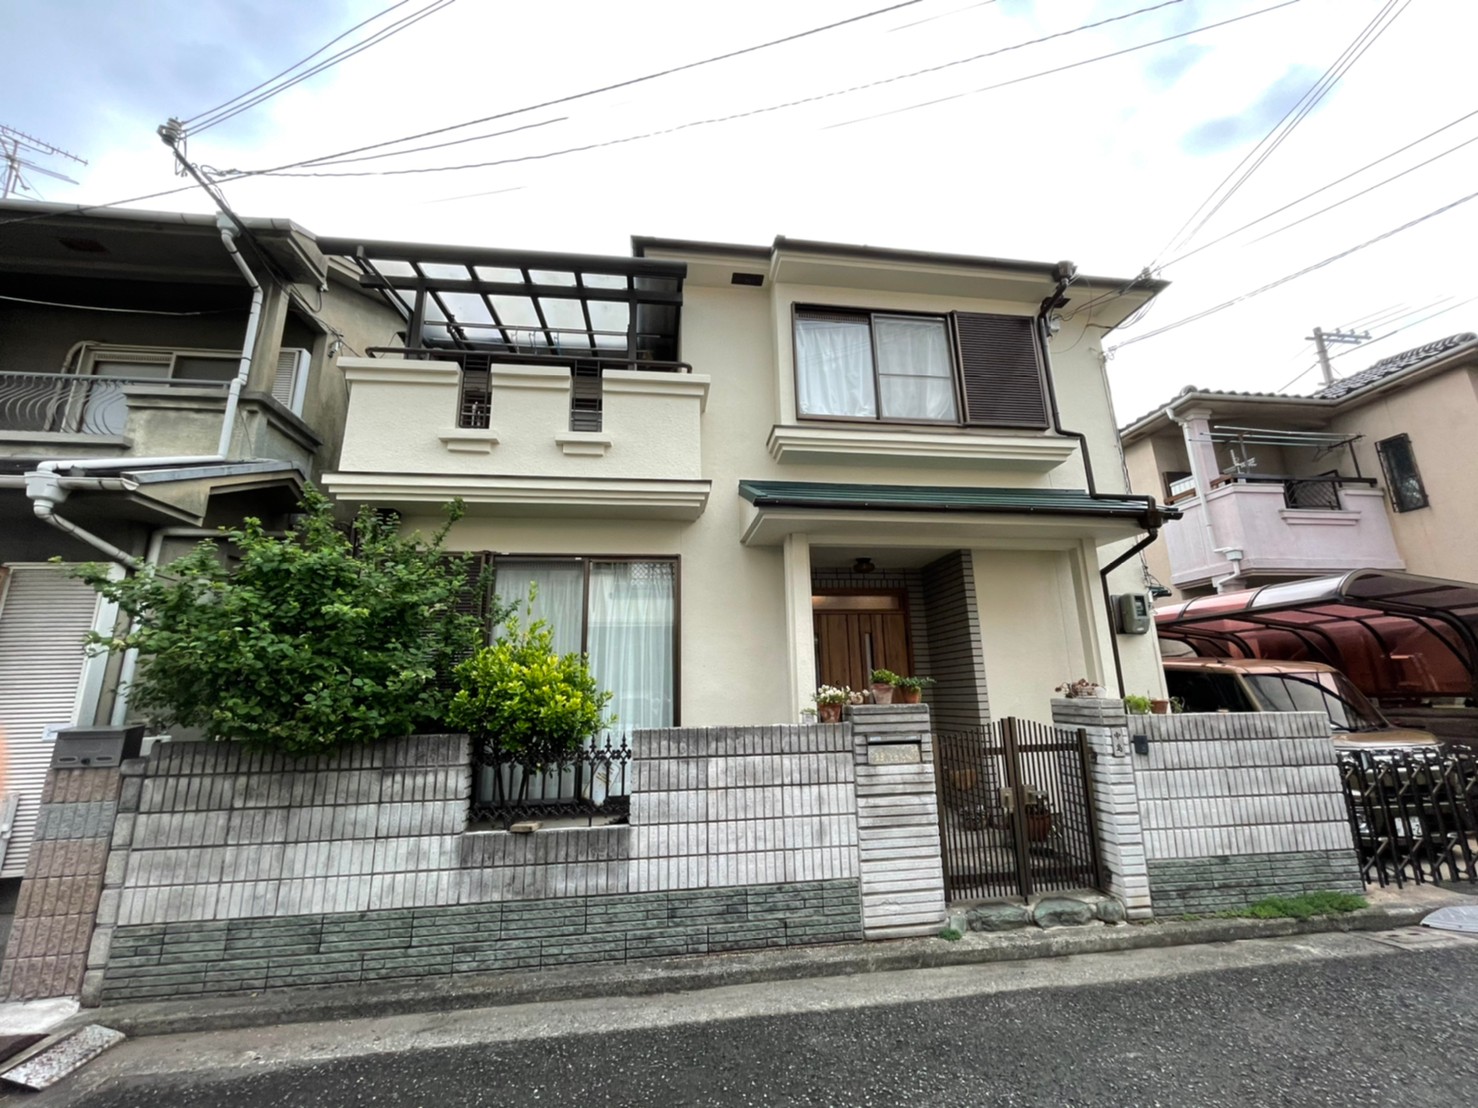 昭和のお家をオシャレにリフォーム | 堺市の外壁塗装専門店 千成工務店